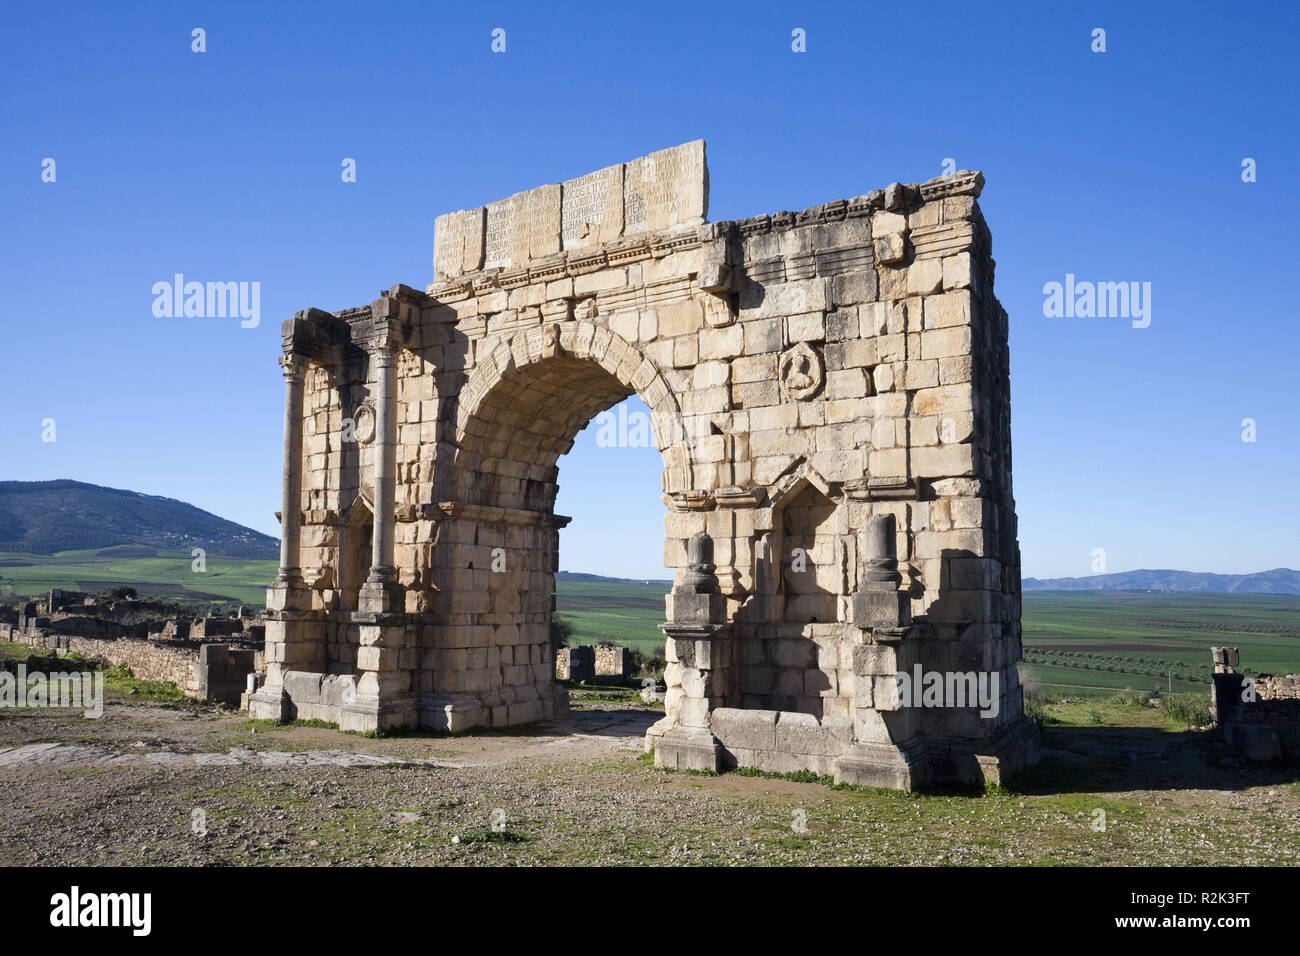 Il Marocco, le rovine Romane di Volubilis, Caracalla arco trionfale, Foto Stock